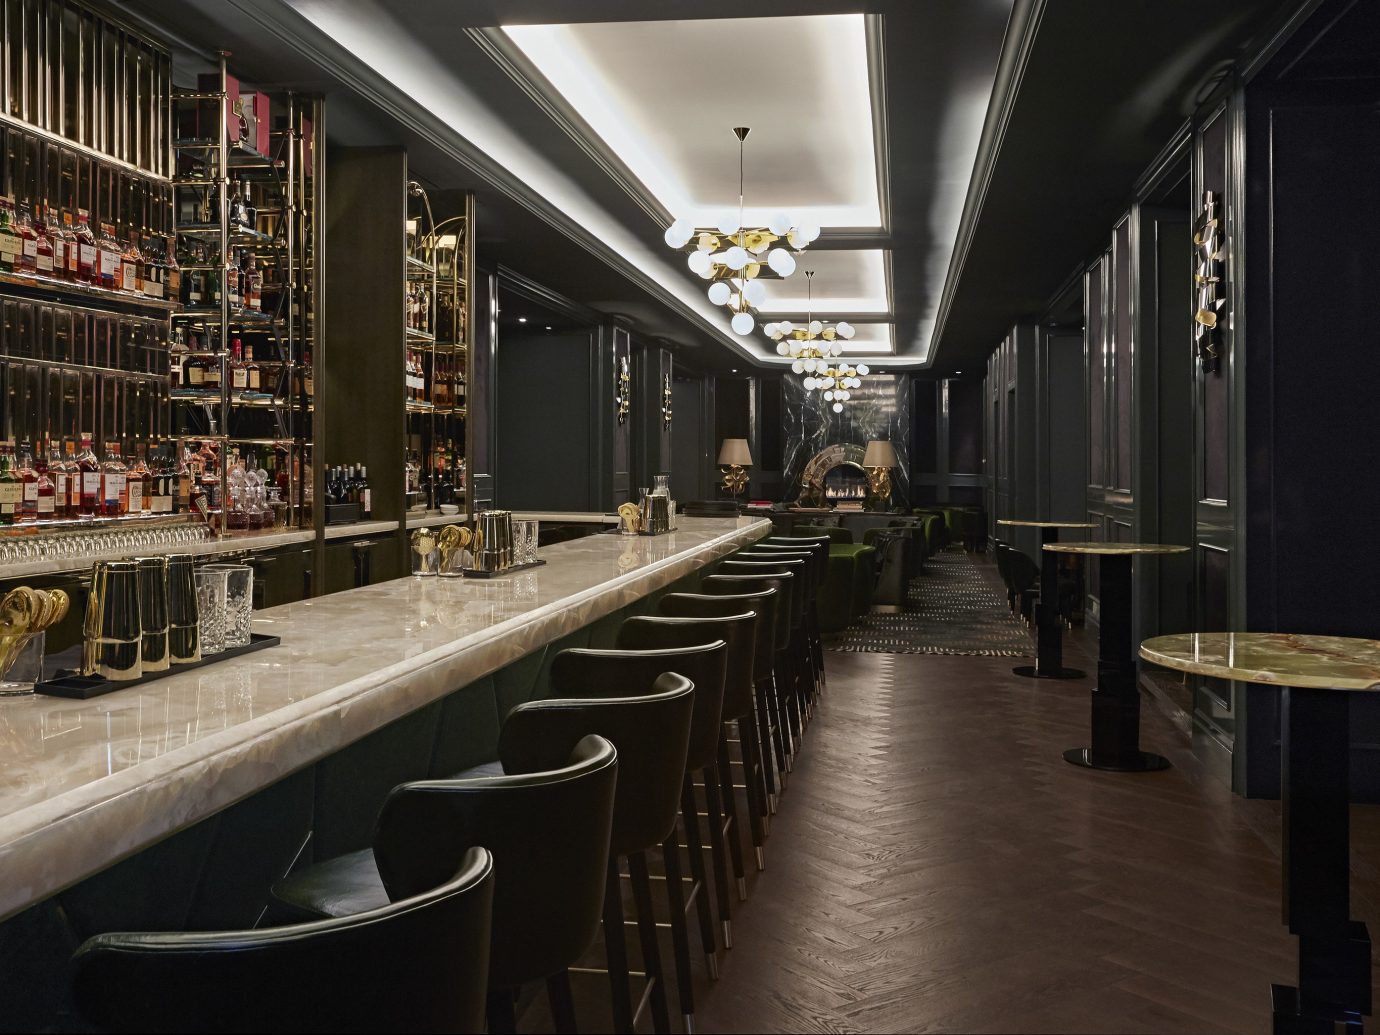 Canada Hotels Toronto indoor floor interior design Bar long platform restaurant lined several